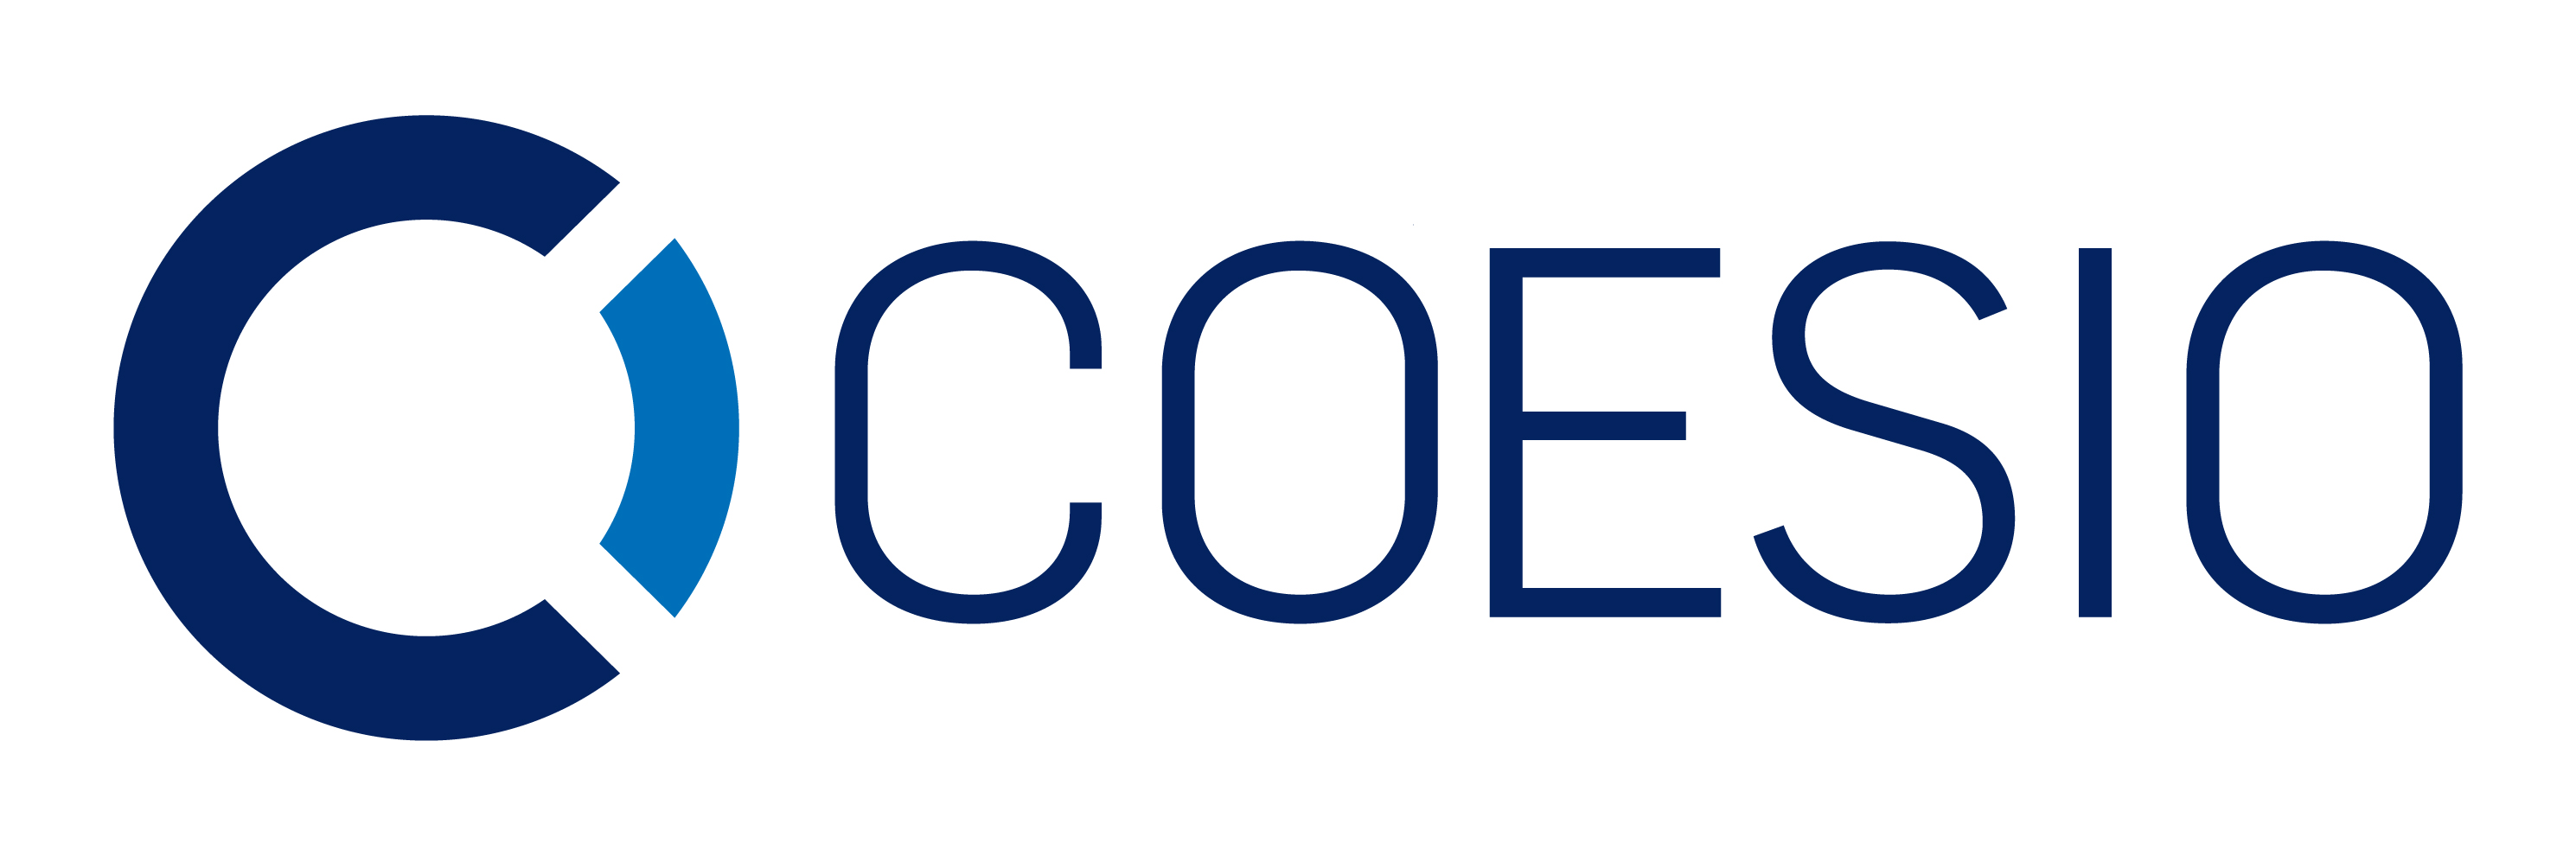 COESIO_logo-couleurs_RGB.jpg